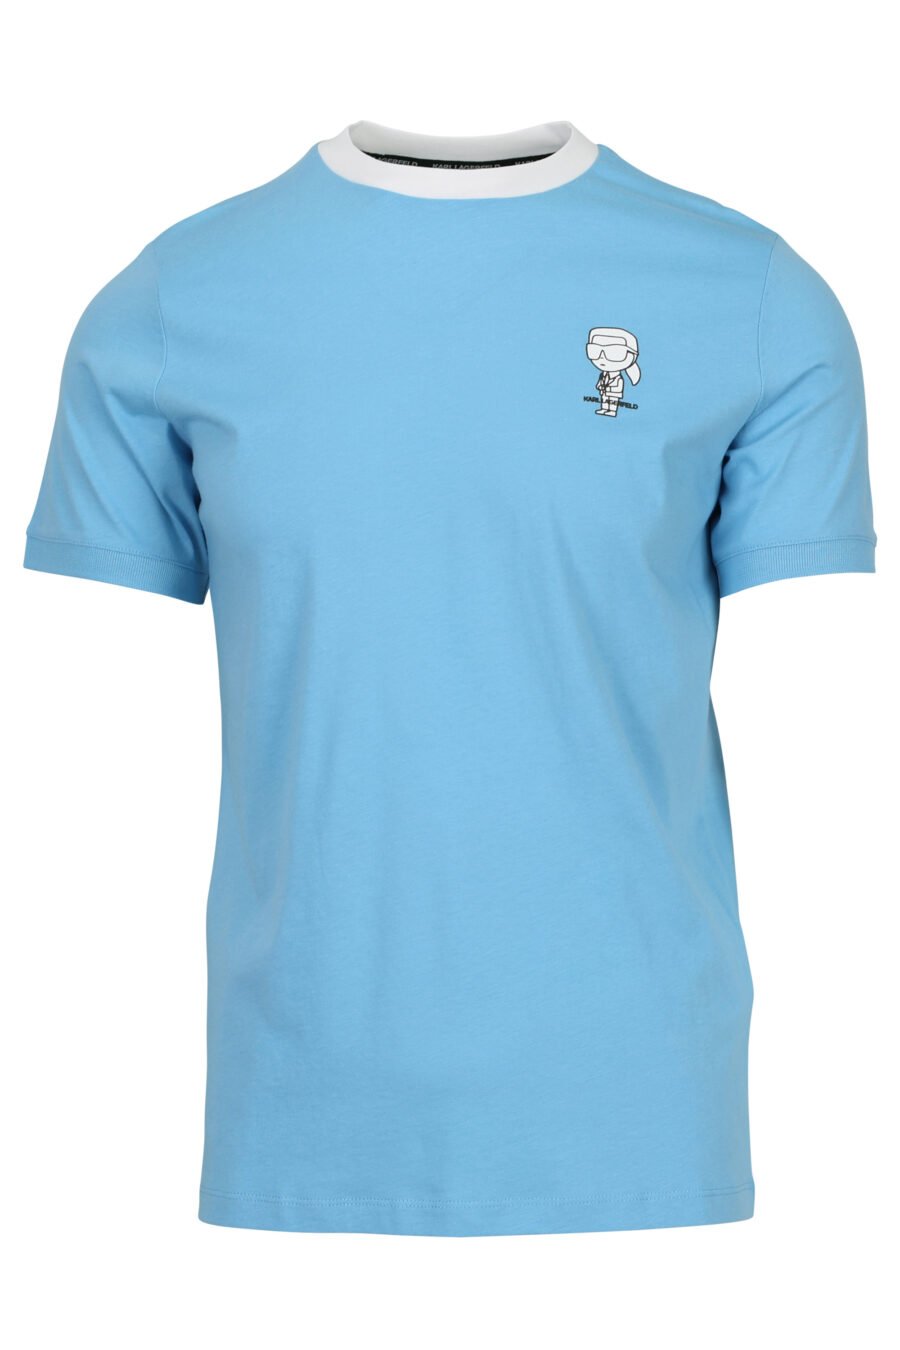 Camiseta azul claro con cuello blanco y minilogo "karl" - 4062226955751